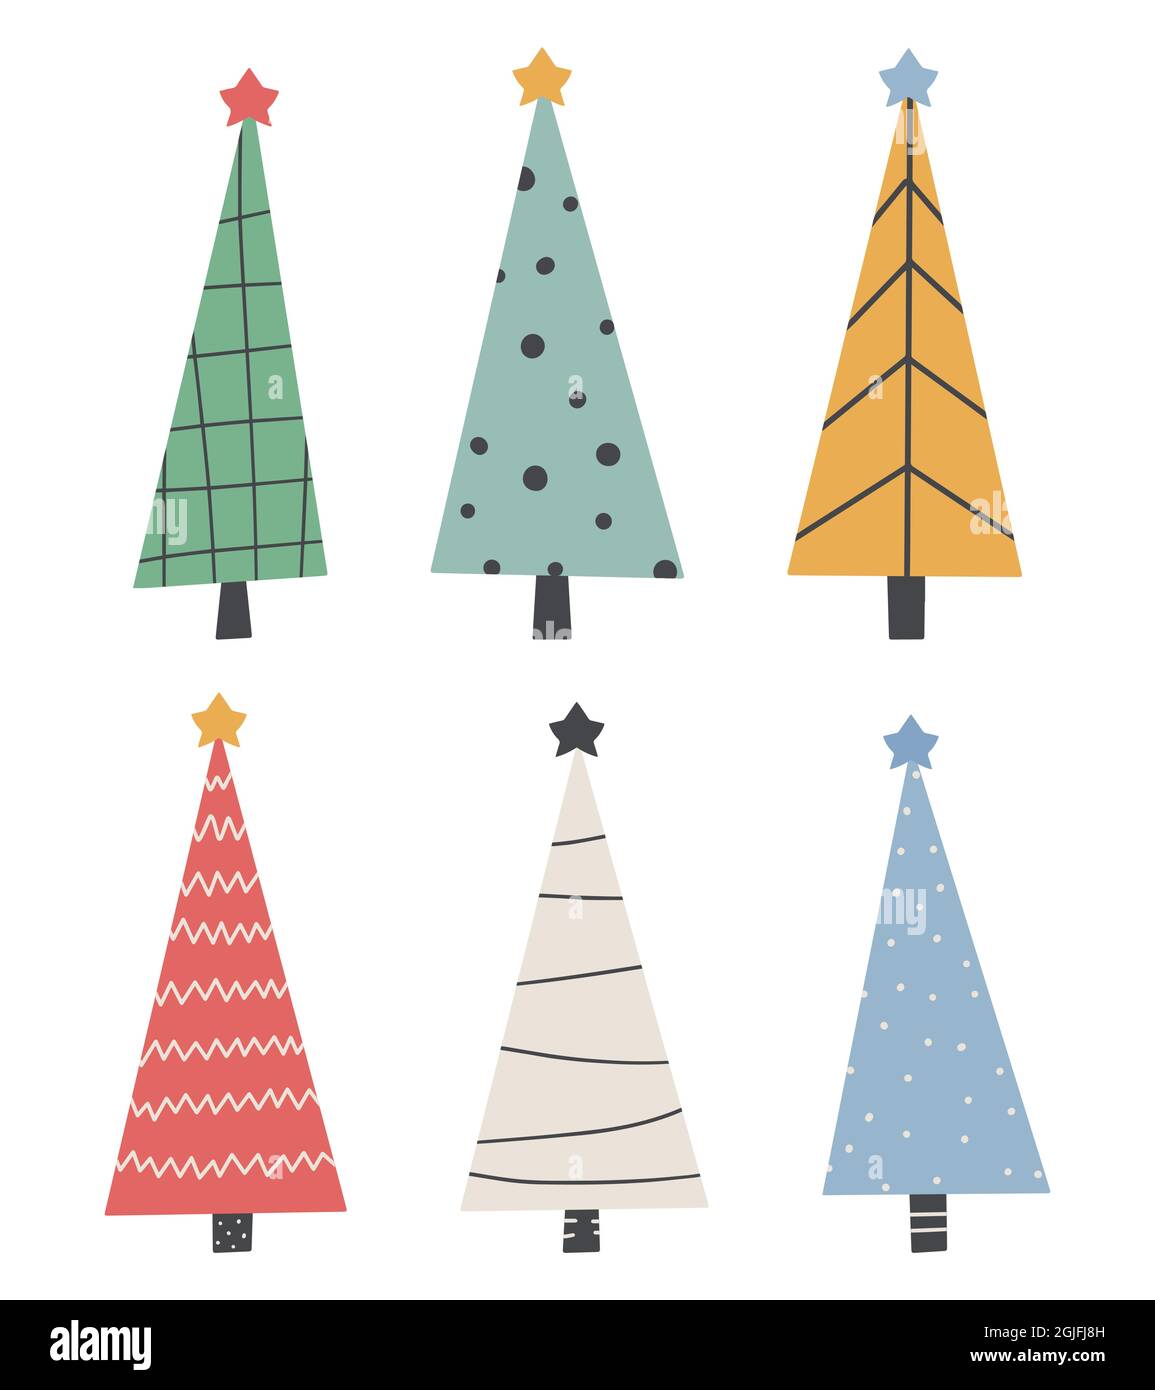 Cute Christmas Trees Set - handgezeichnetes kindliches Design Neujahr, Weihnachten, Feiertage Vektor-Illustration Stock Vektor